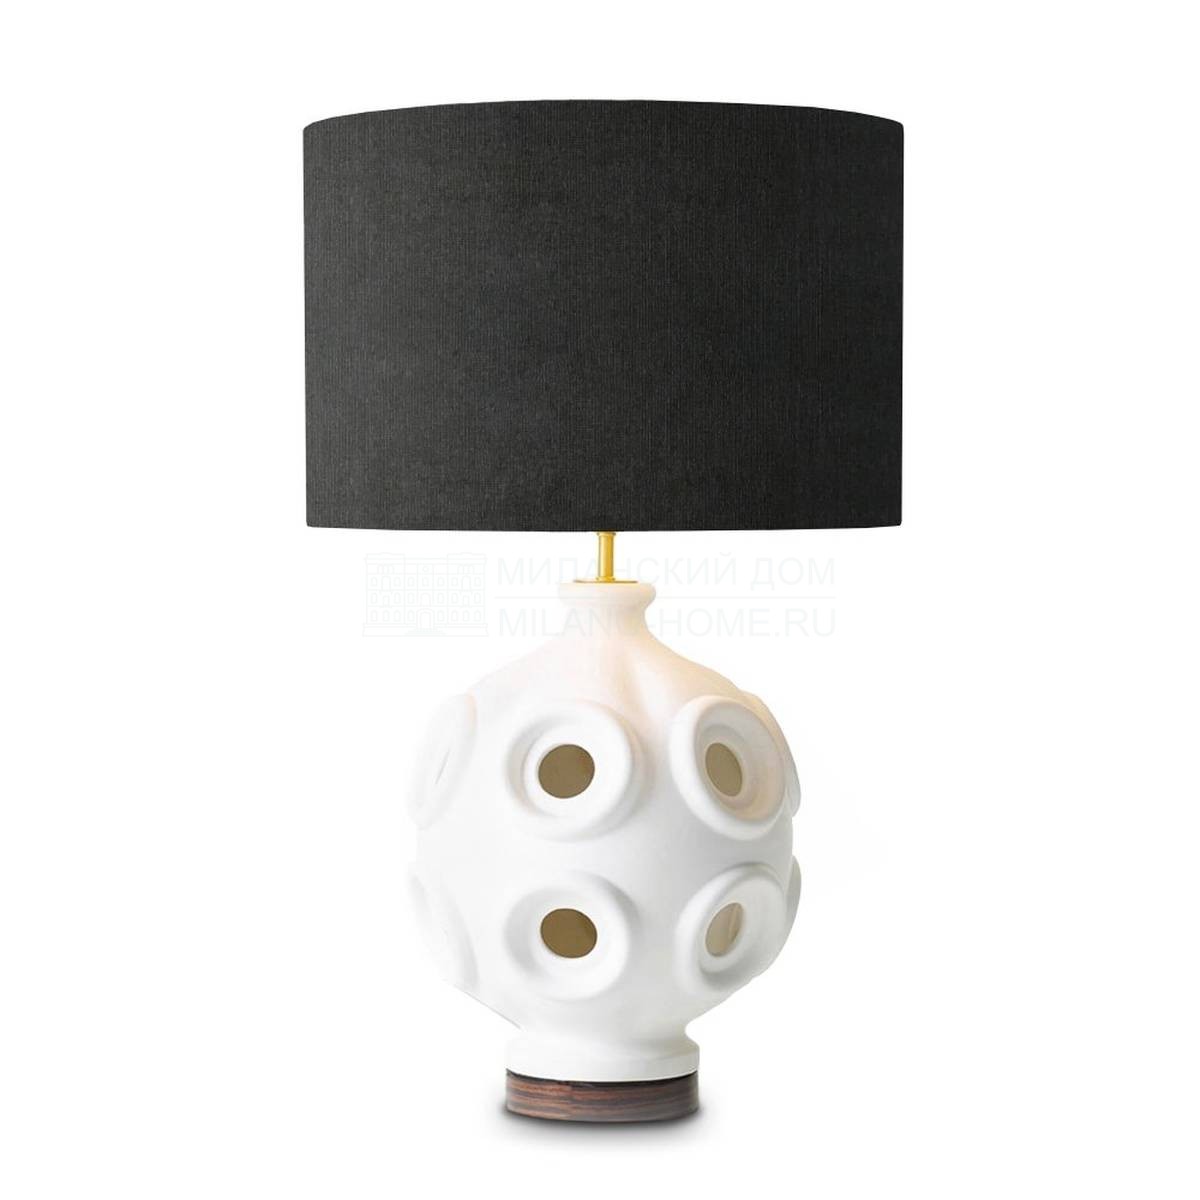 Настольная лампа Liz table lamp из Италии фабрики MARIONI